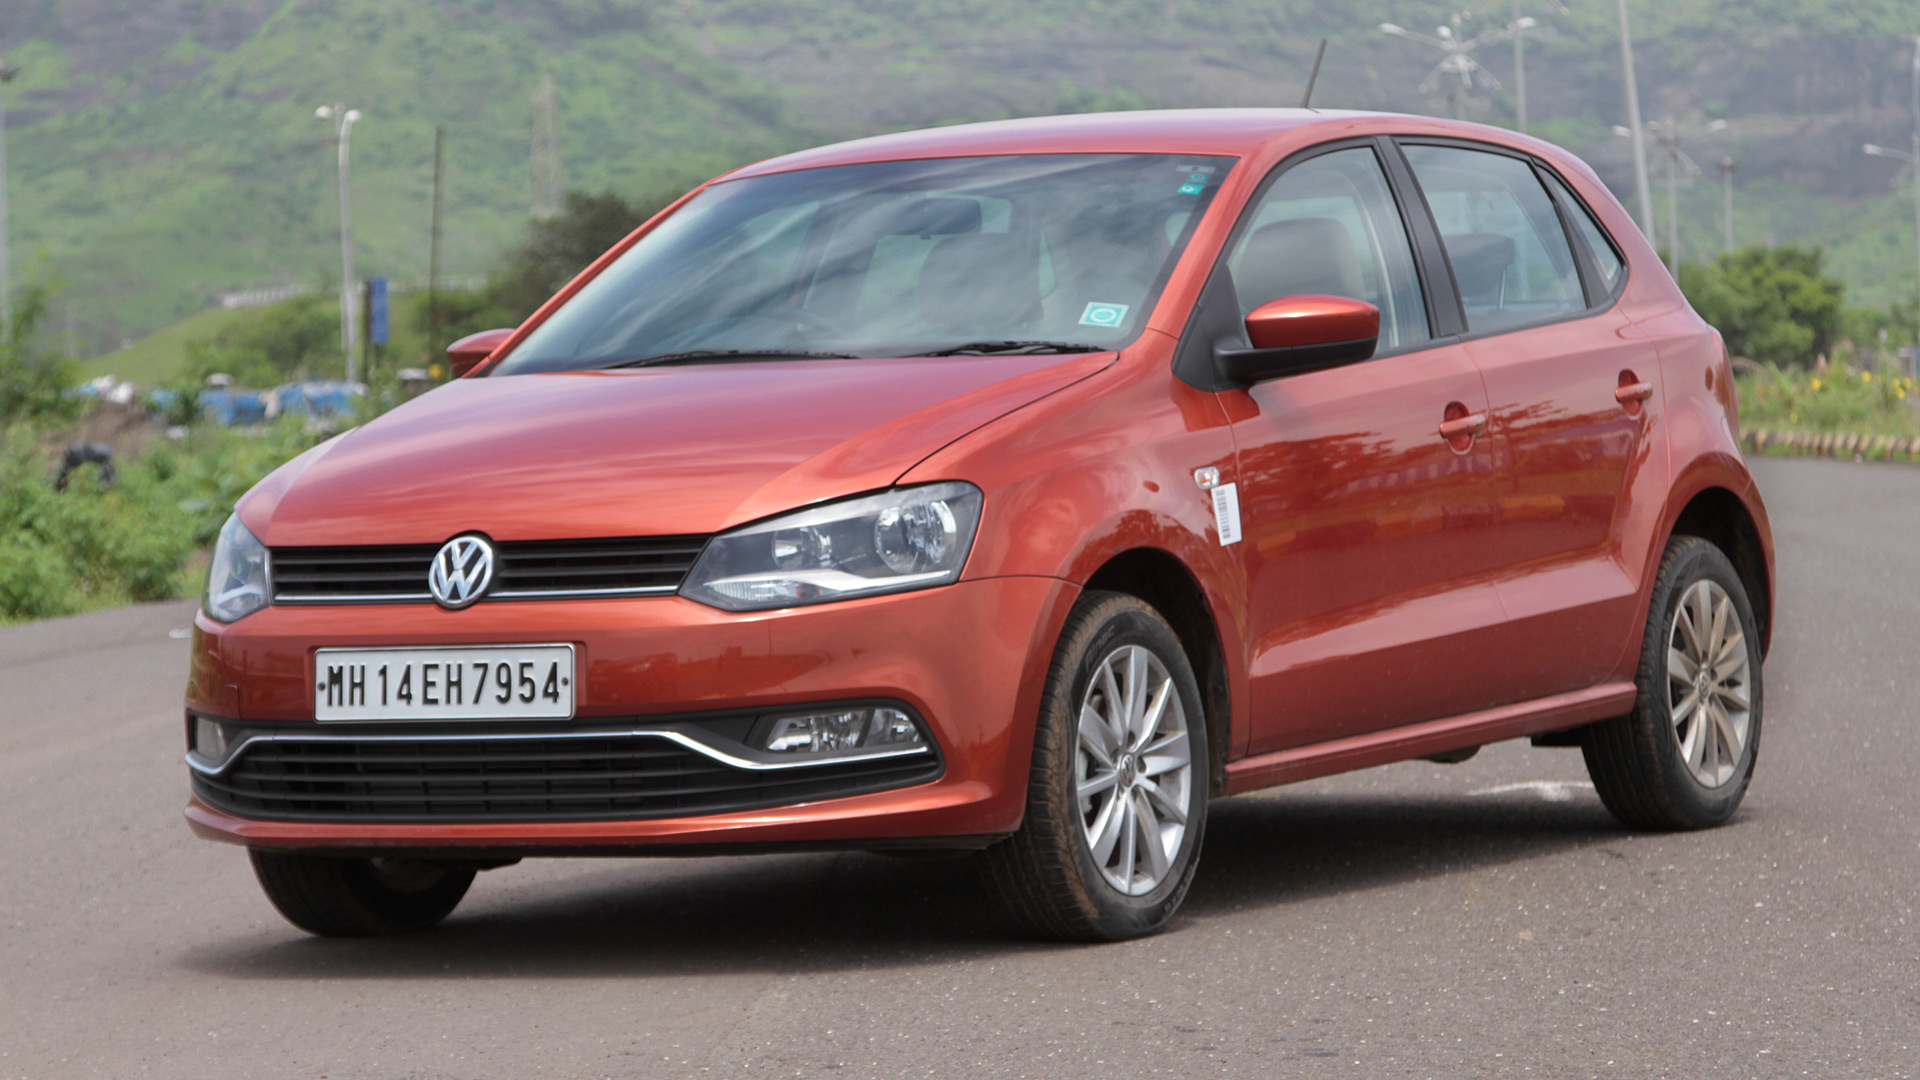 Verdeel Verbeelding Pijlpunt Volkswagen-Polo-2014 Exterior Car Photos - Overdrive